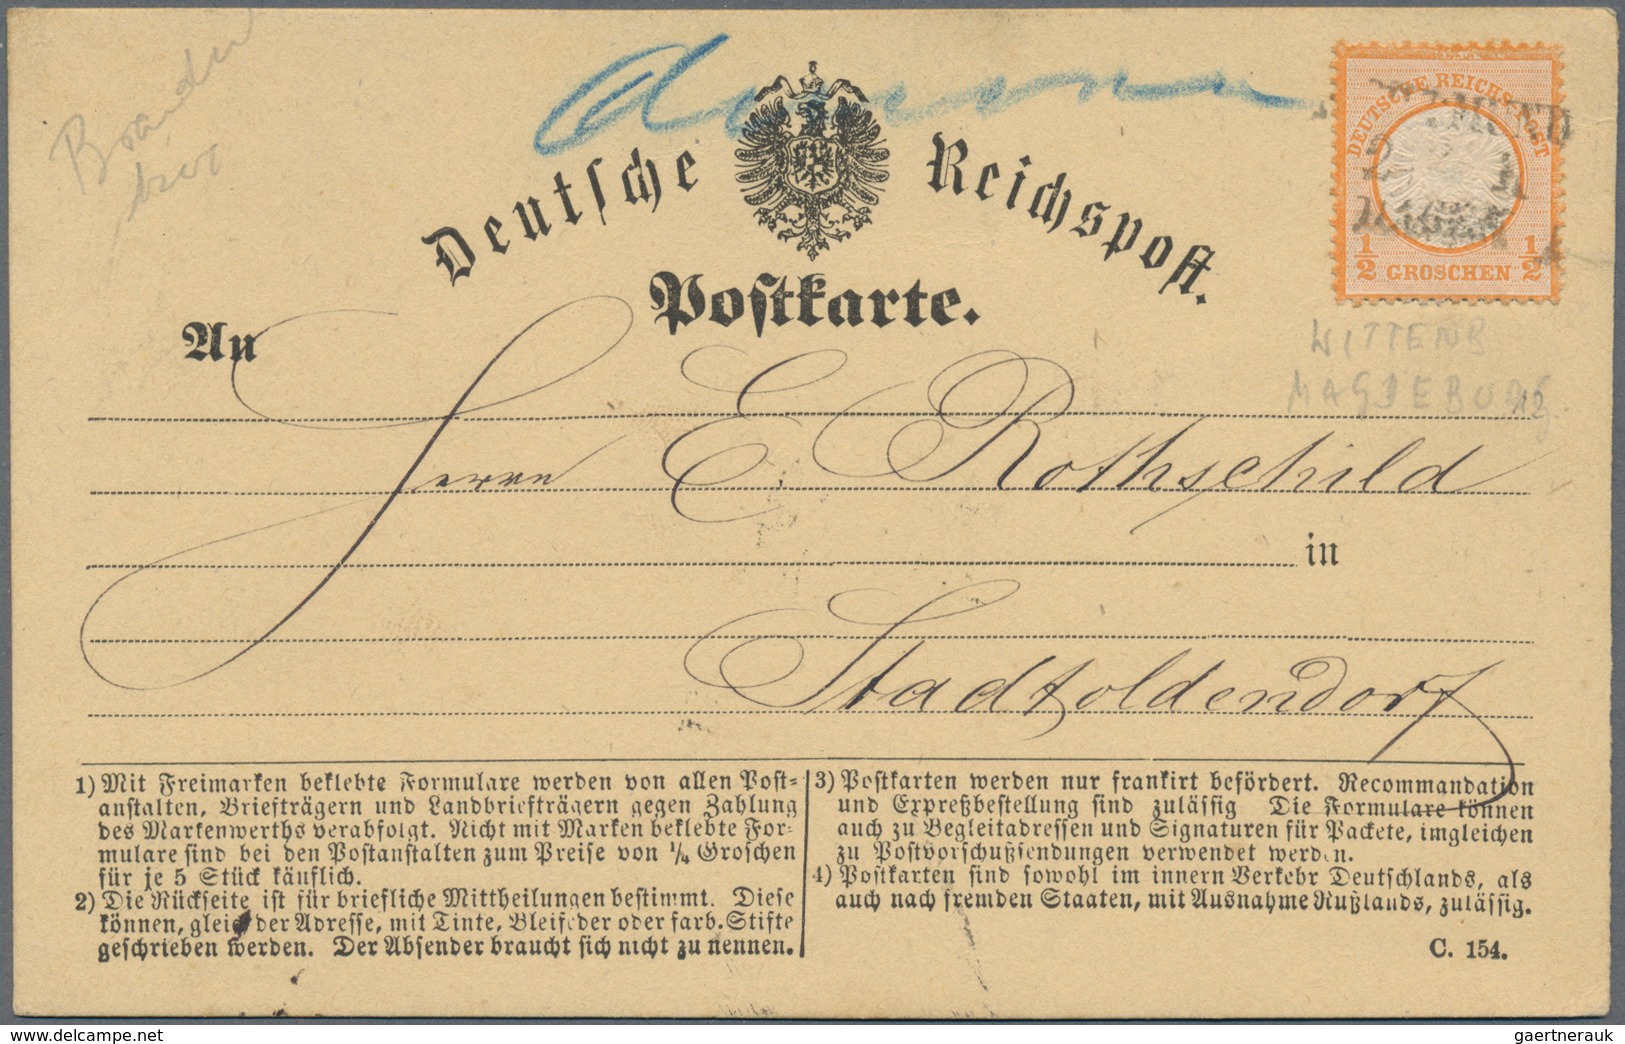 Deutsches Reich - Brustschild: ab ca. 1872, herrlicher Posten von rund 180 Belegen mit imposanten Fr